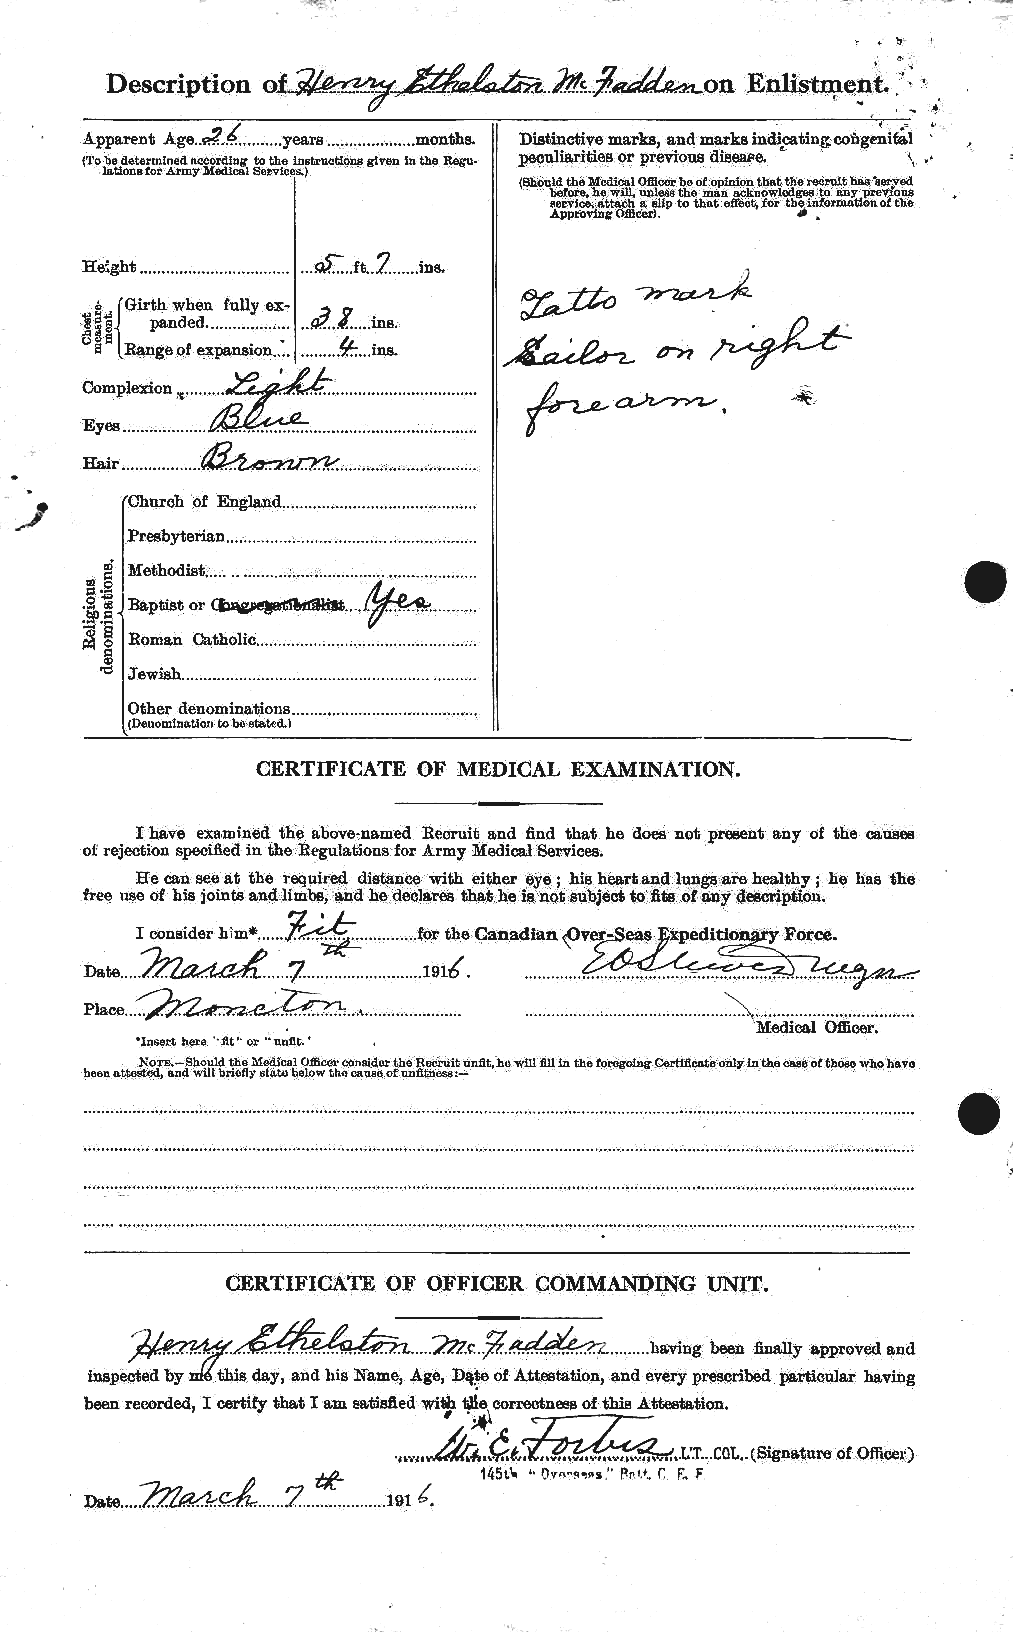 Dossiers du Personnel de la Première Guerre mondiale - CEC 521064b